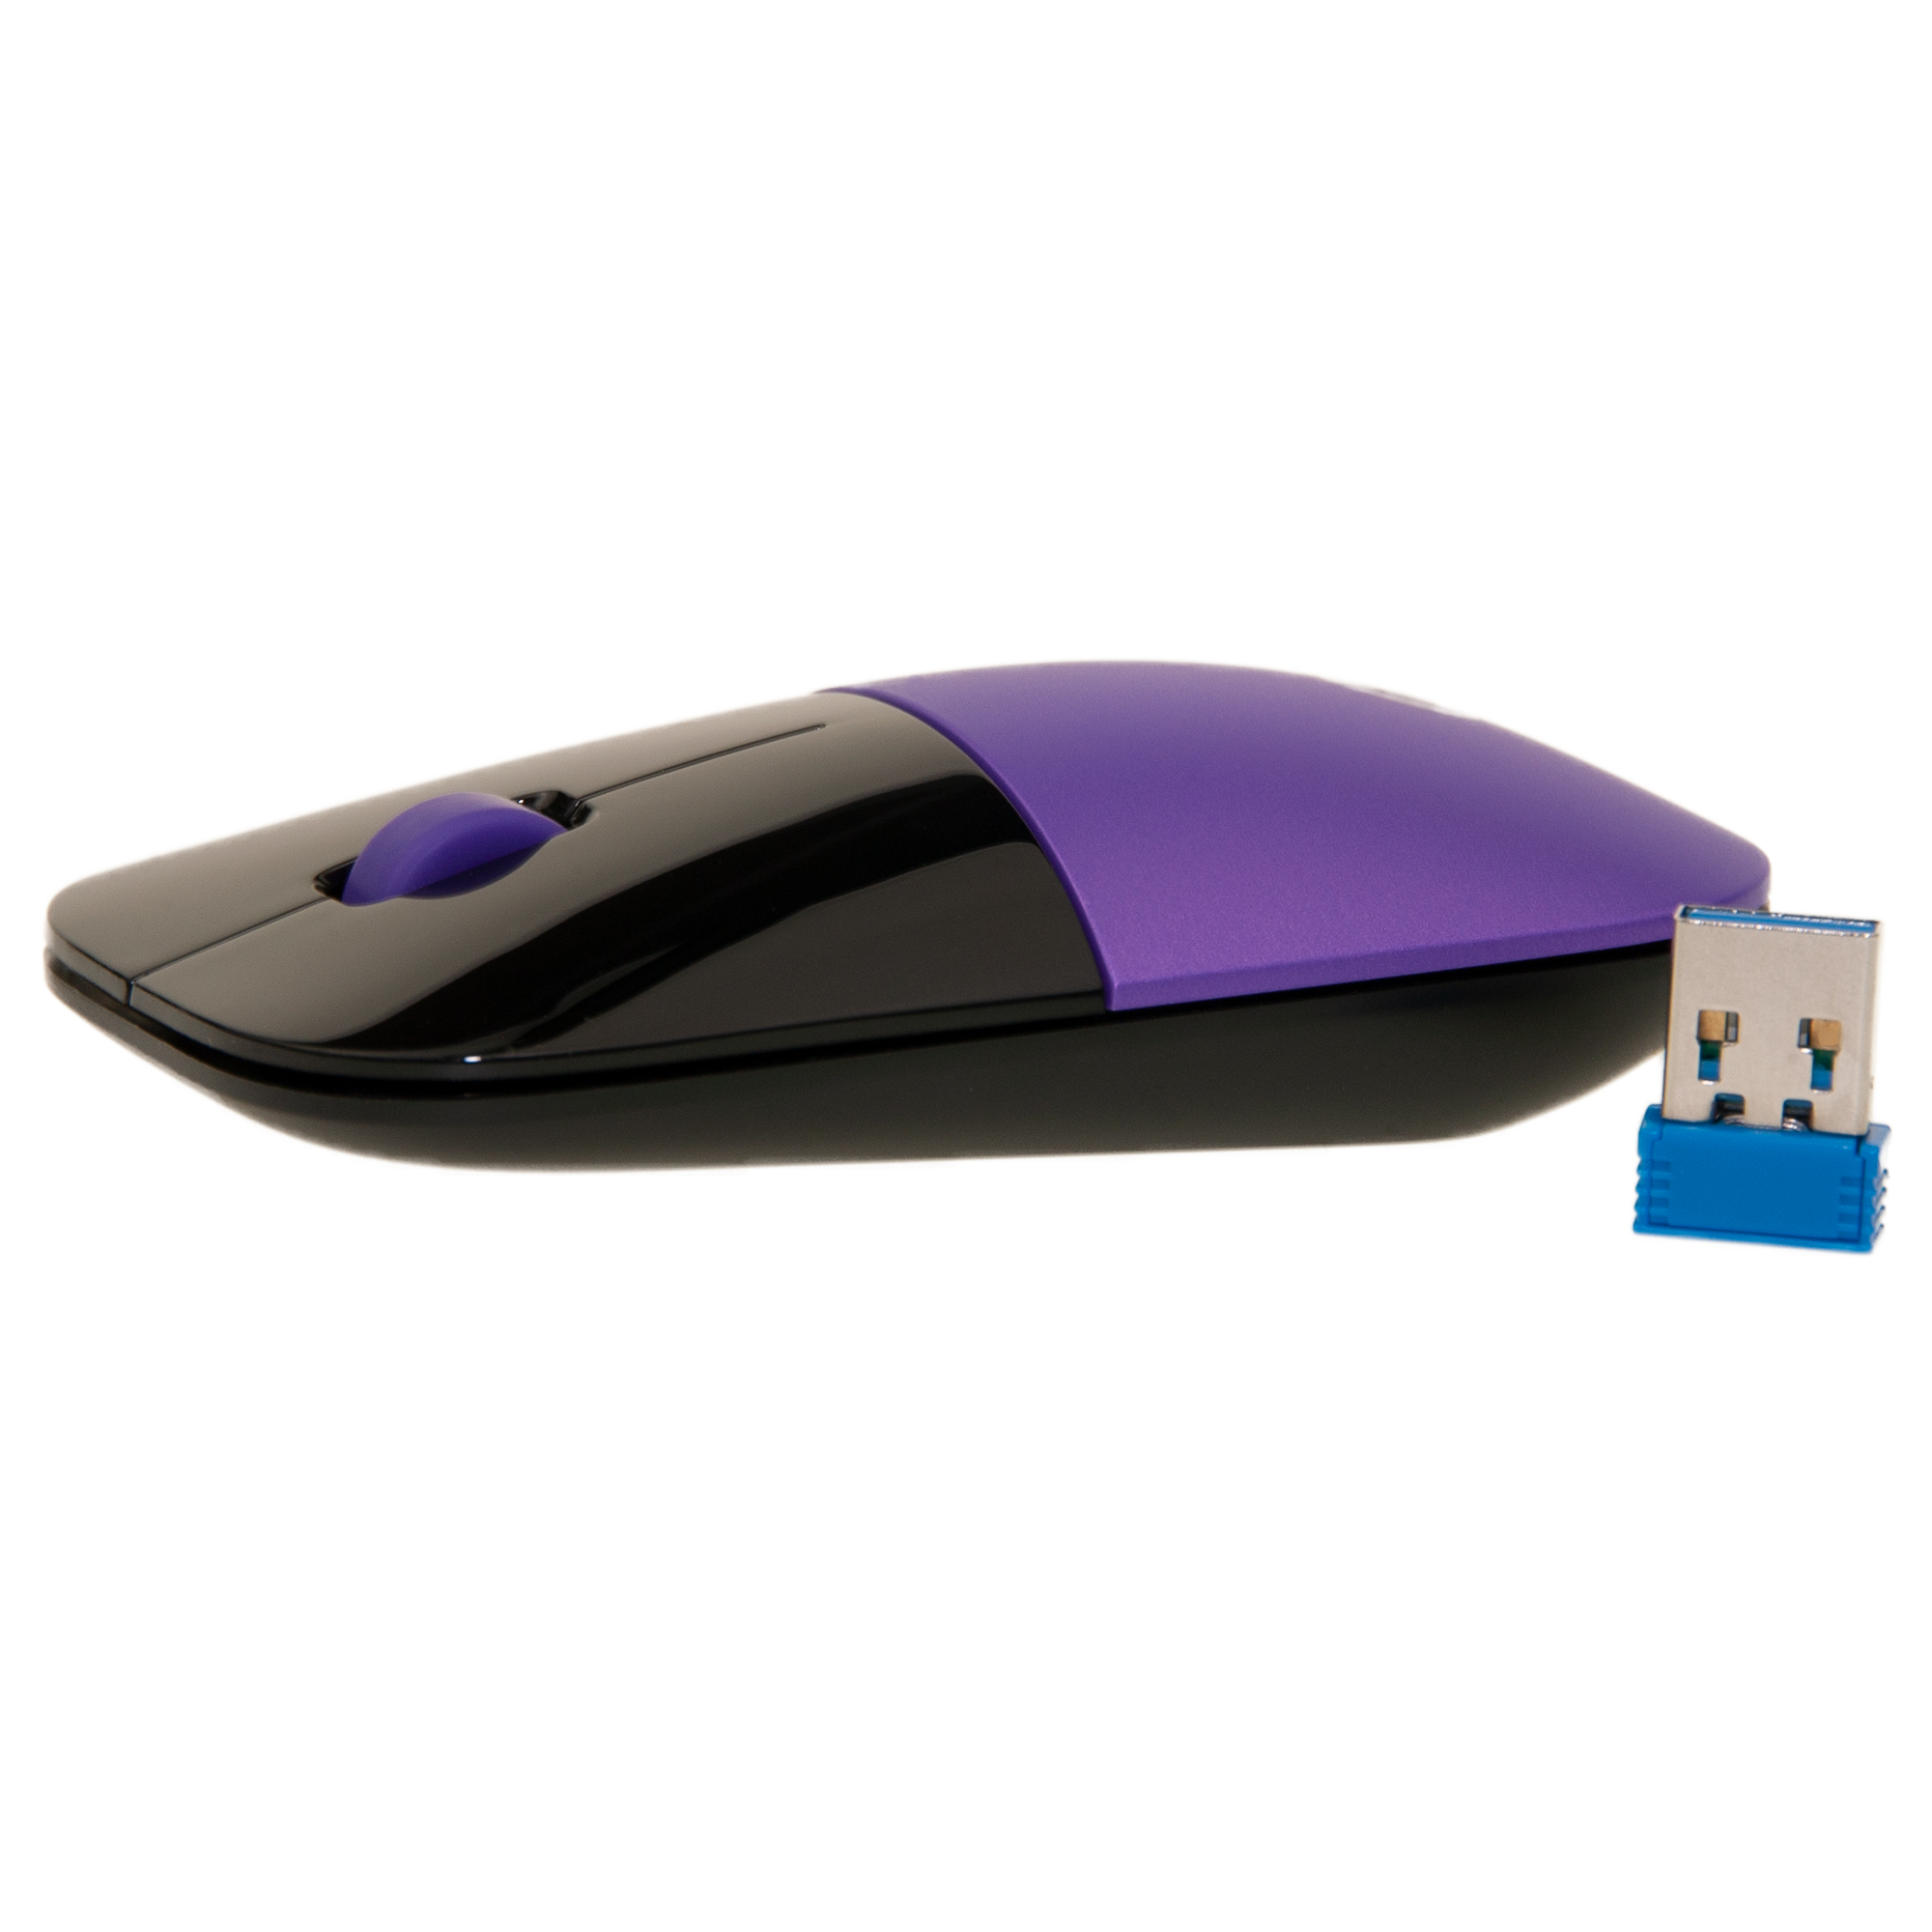 Stylish Profile Sleek Low Purple Mouse, HP Z3700 Wireless